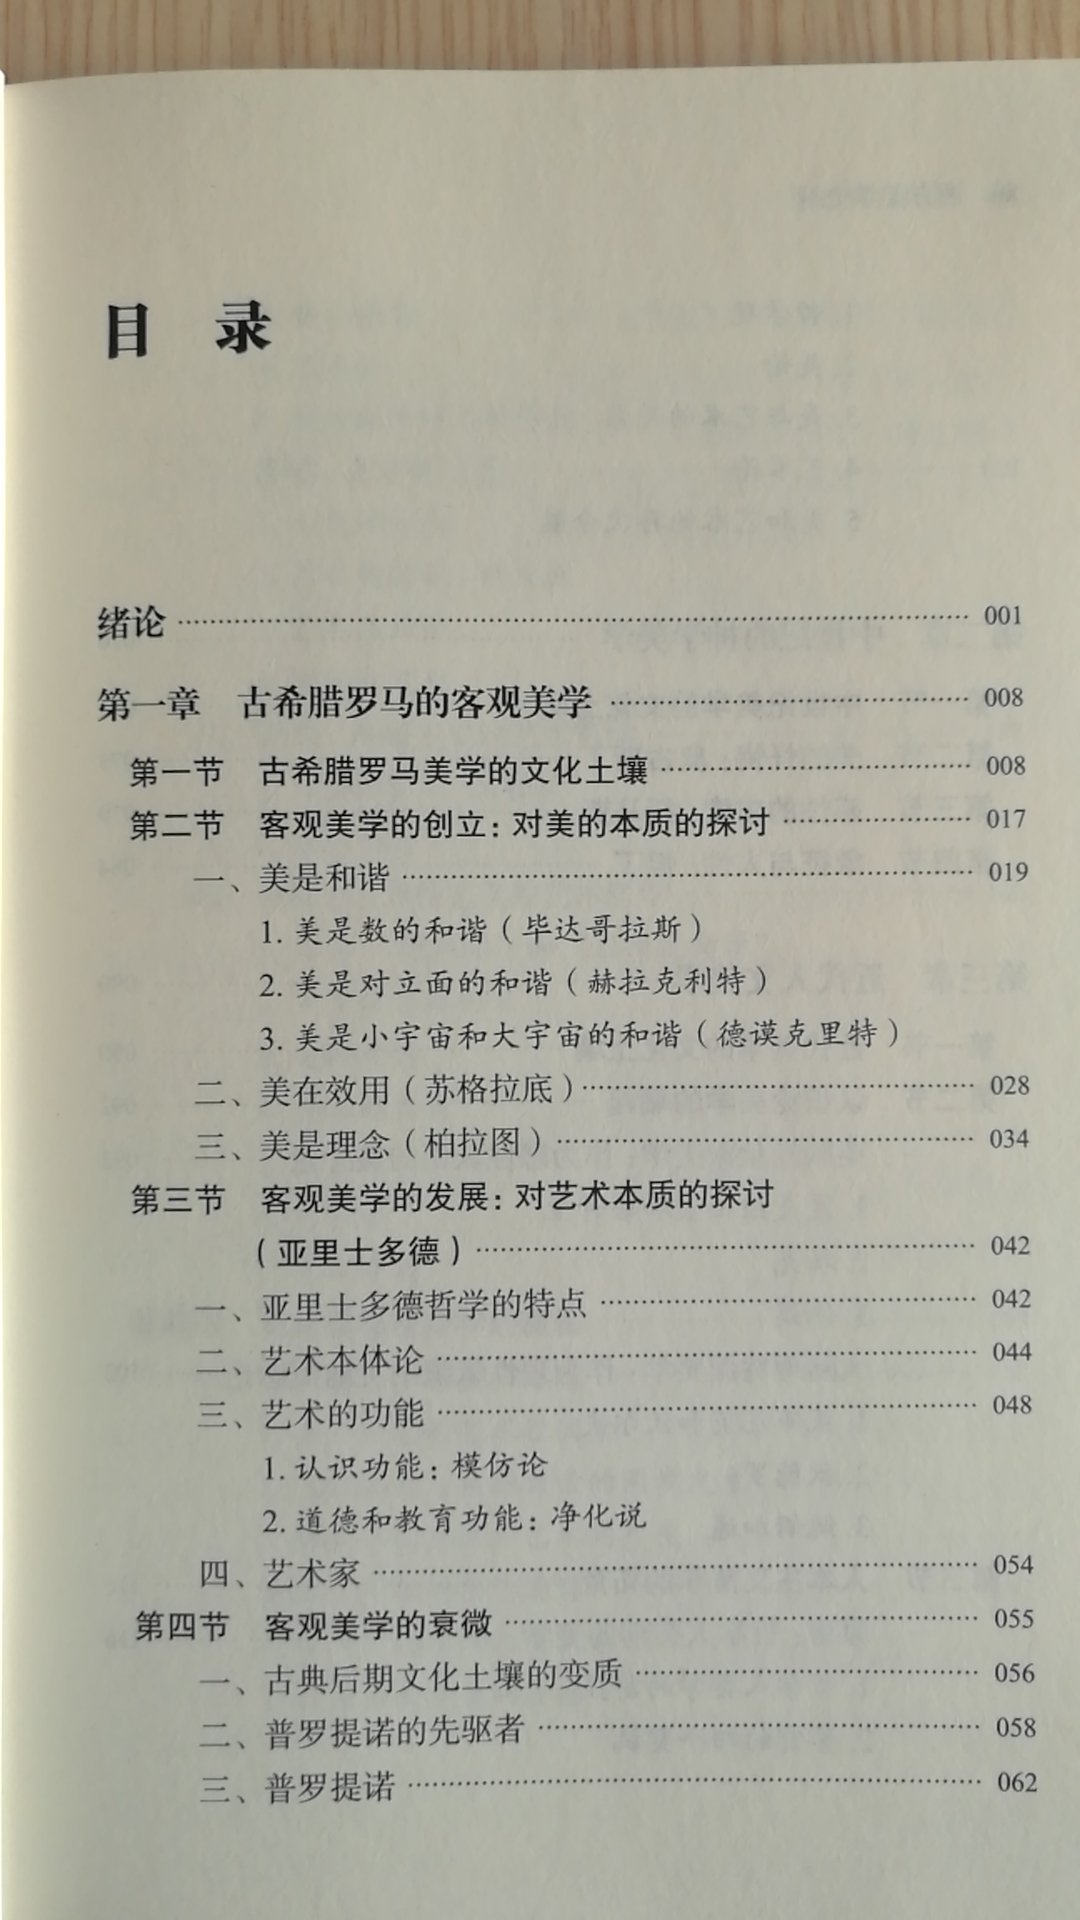 邓老师的书看了很多了，在学术上邓老师很有功力。这本专著用很简洁的语言把西方美学史两千多年的思想历程纲要式的表达出来，是继《黄与蓝的交响》后美学方面的又一力作。